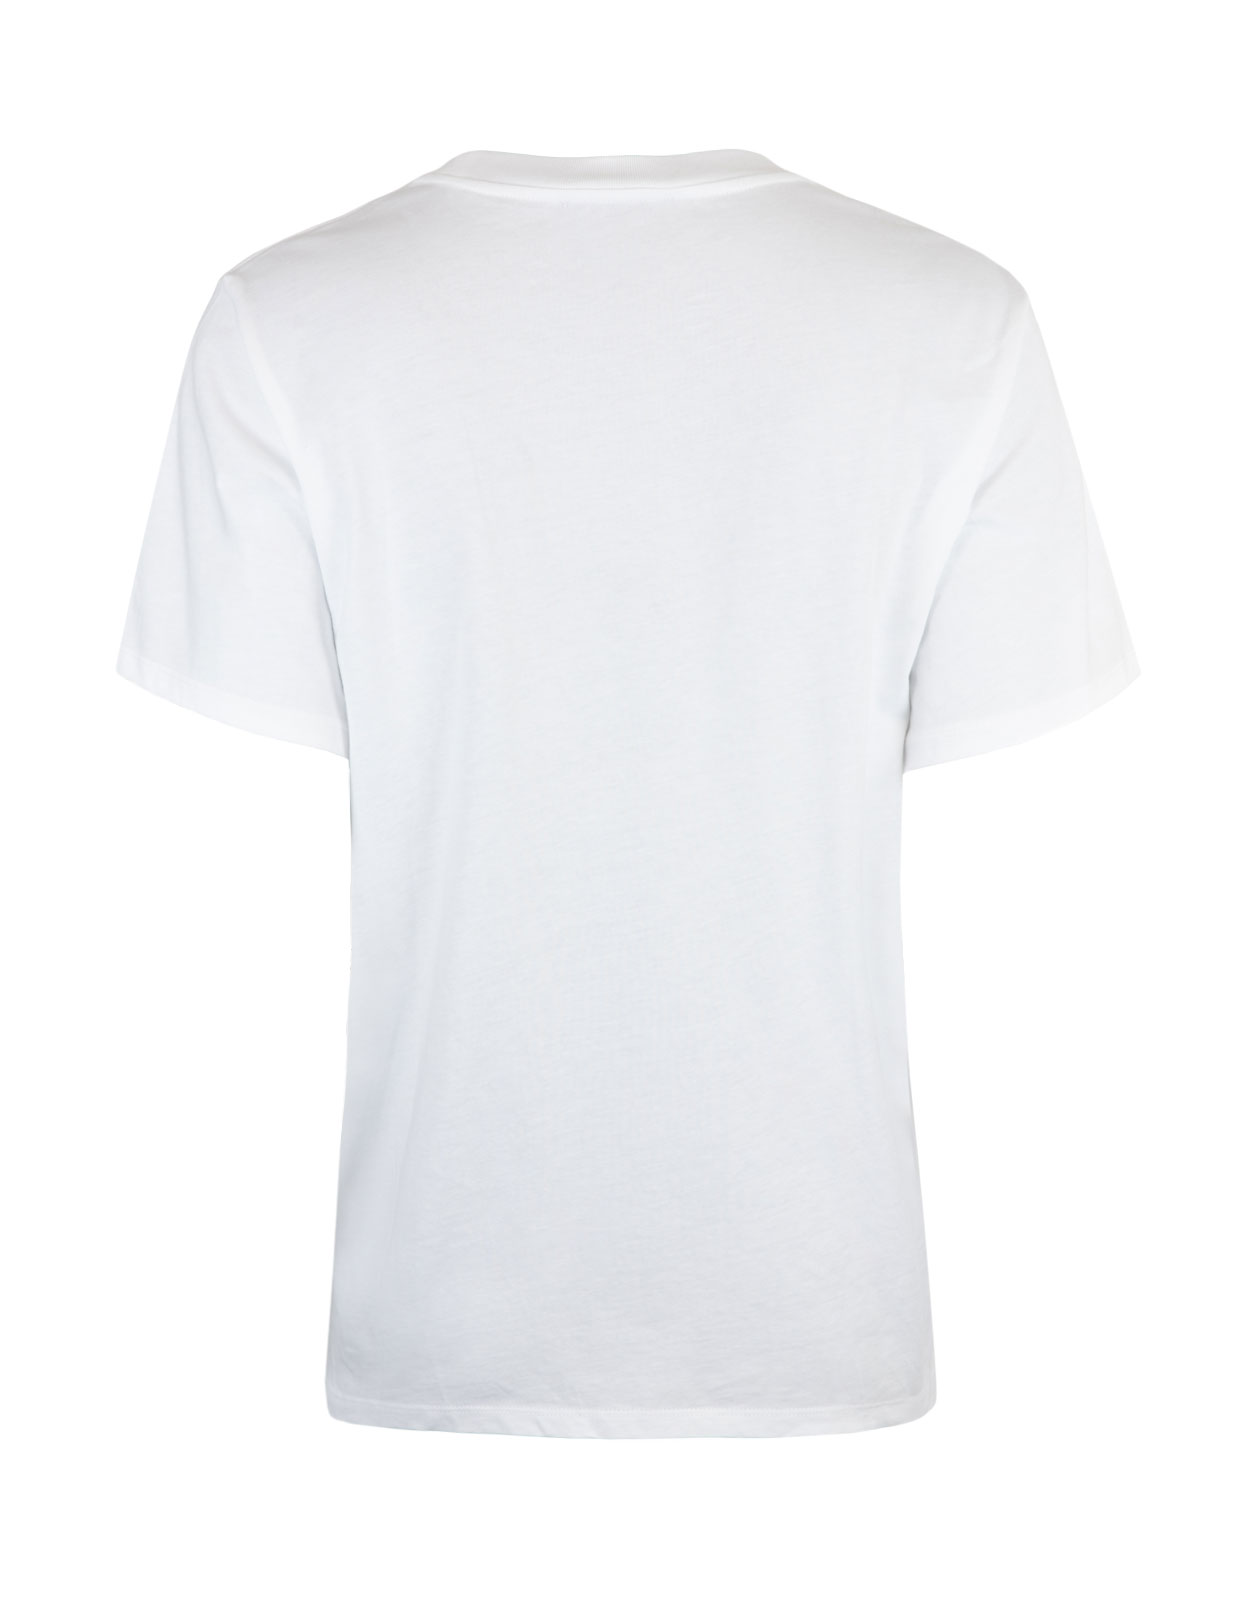 Turiya Waterfloral T-Shirt White